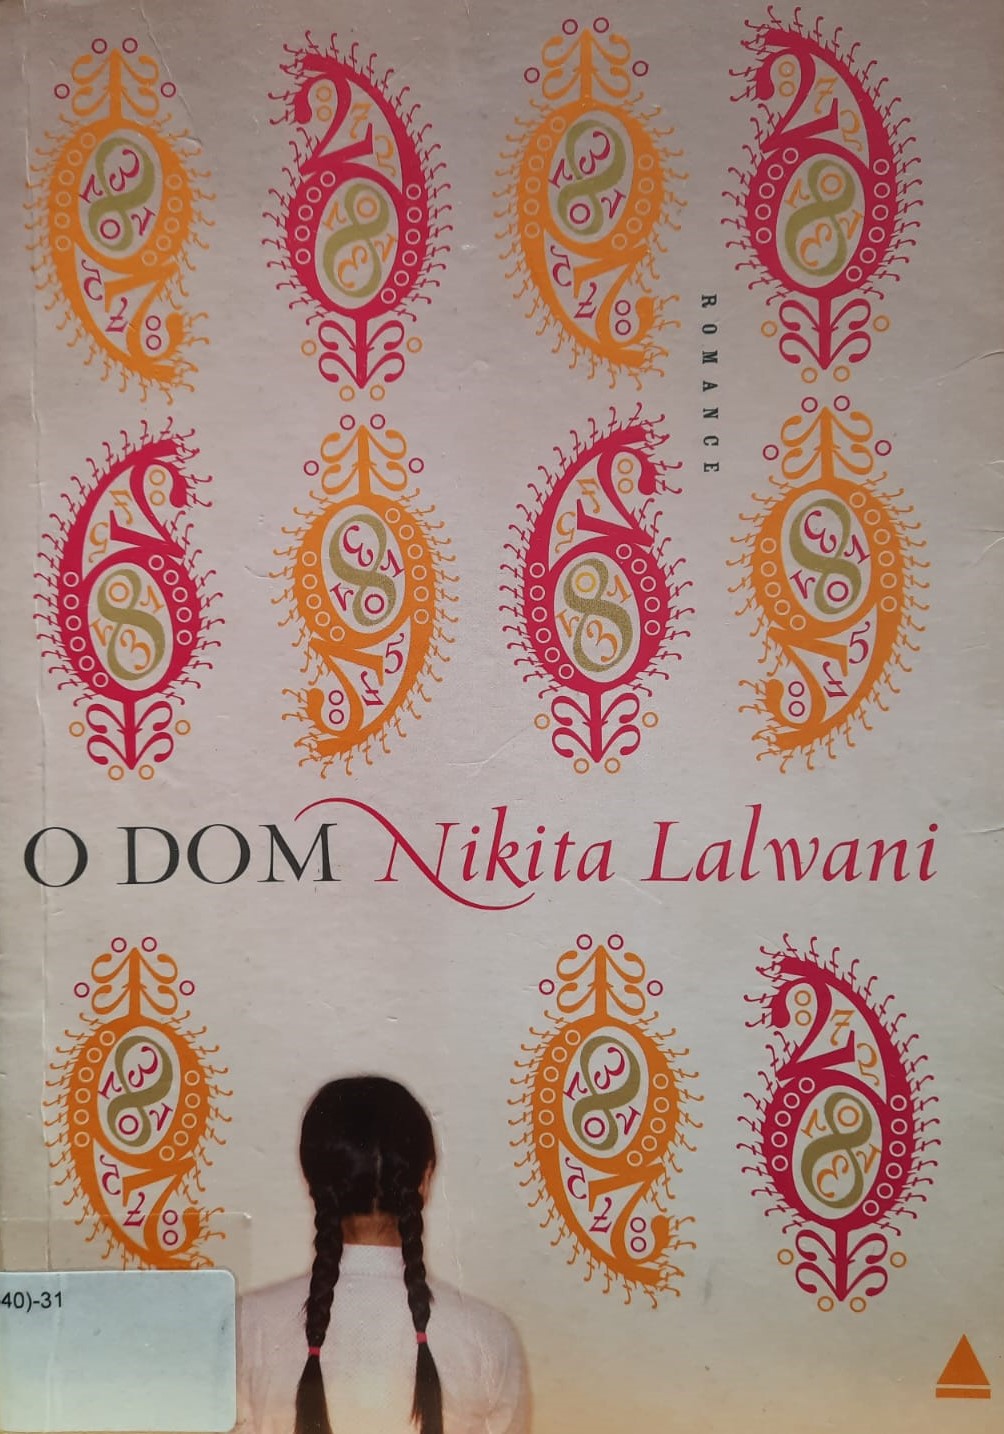 capa da obra O Dom da autora Nikita Lalwani com fundo bege e os numerais 6 e 9 nos tons rosa e amarelo, respectivamente e uma menina de costas no canto esquerdo